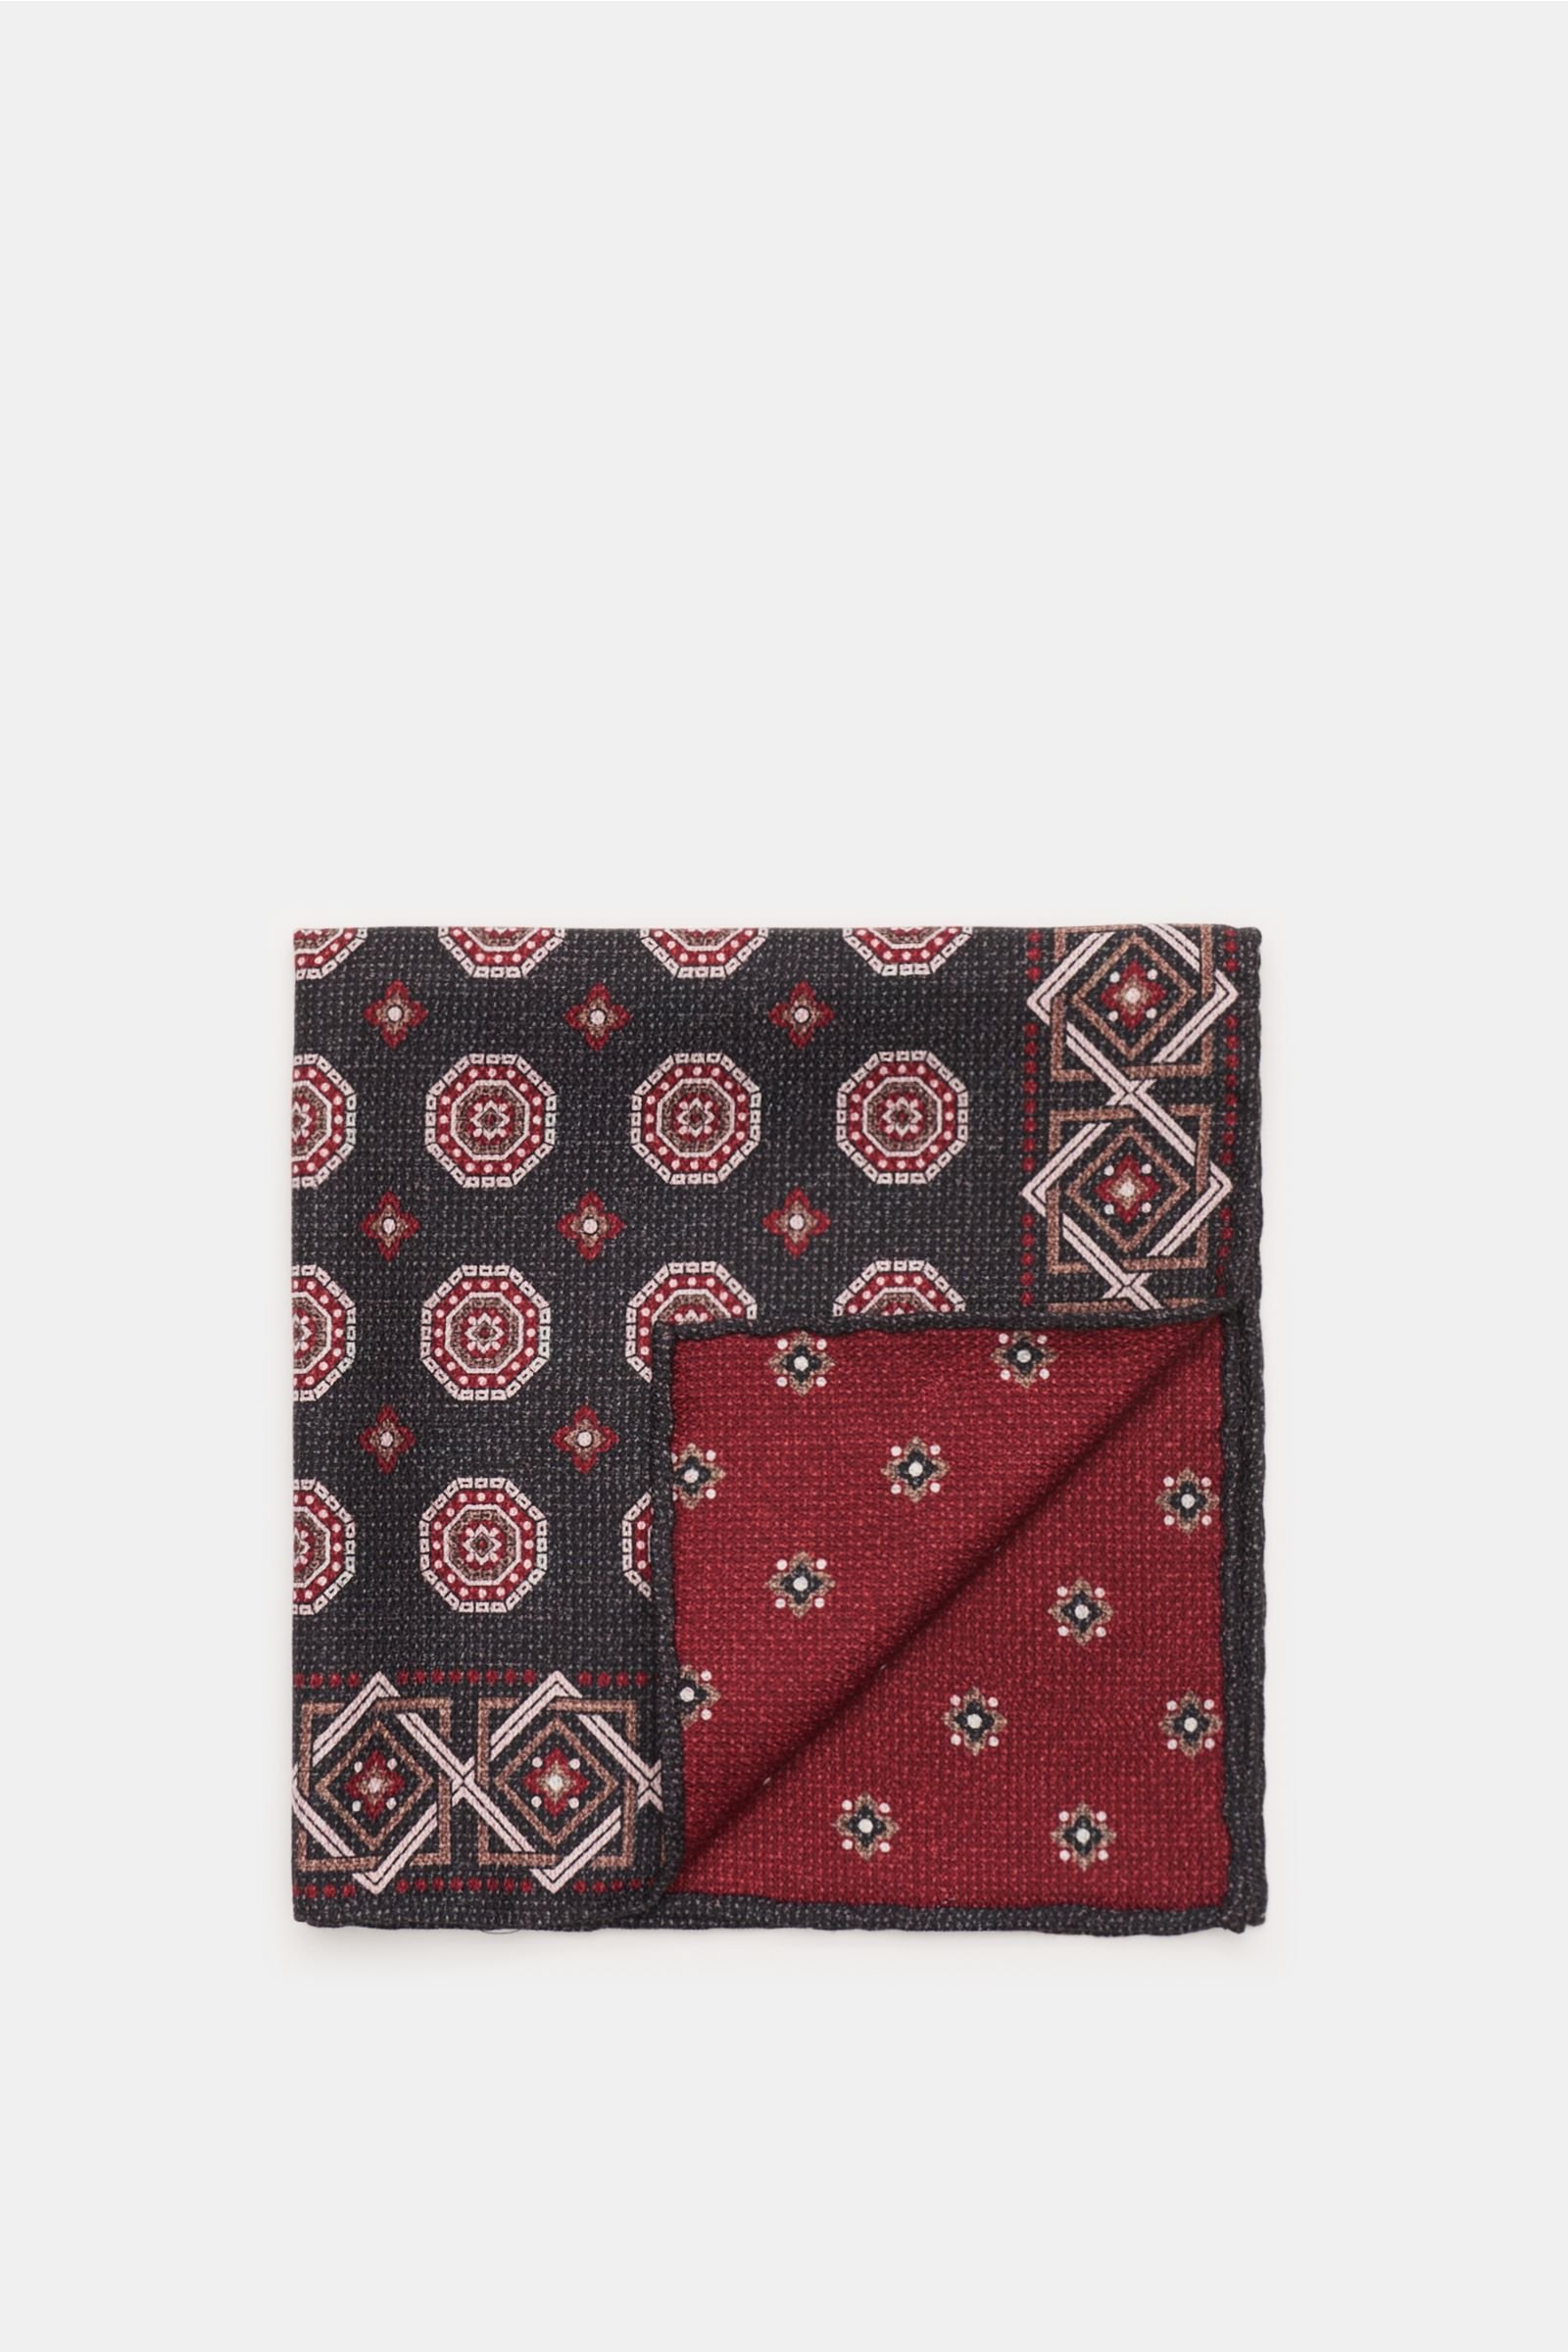 Pocket square dark grey/burgundy patterned